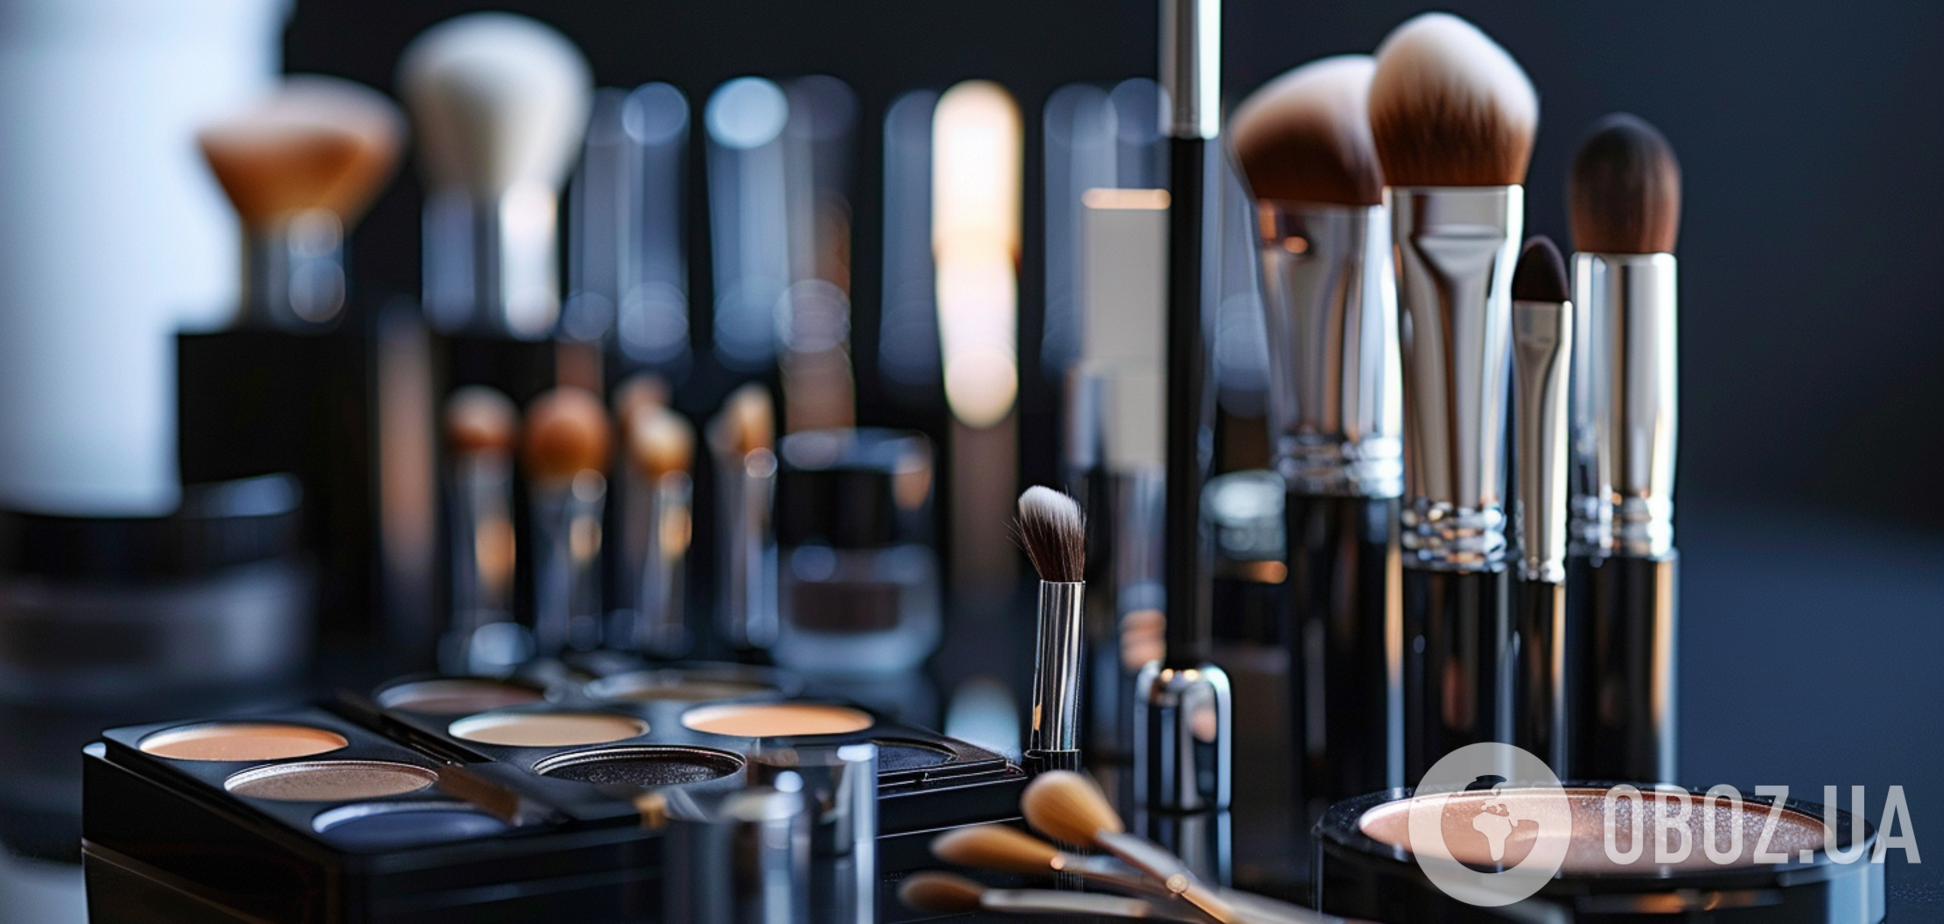 Как сделать, чтобы макияж не 'расплывался': полезные советы